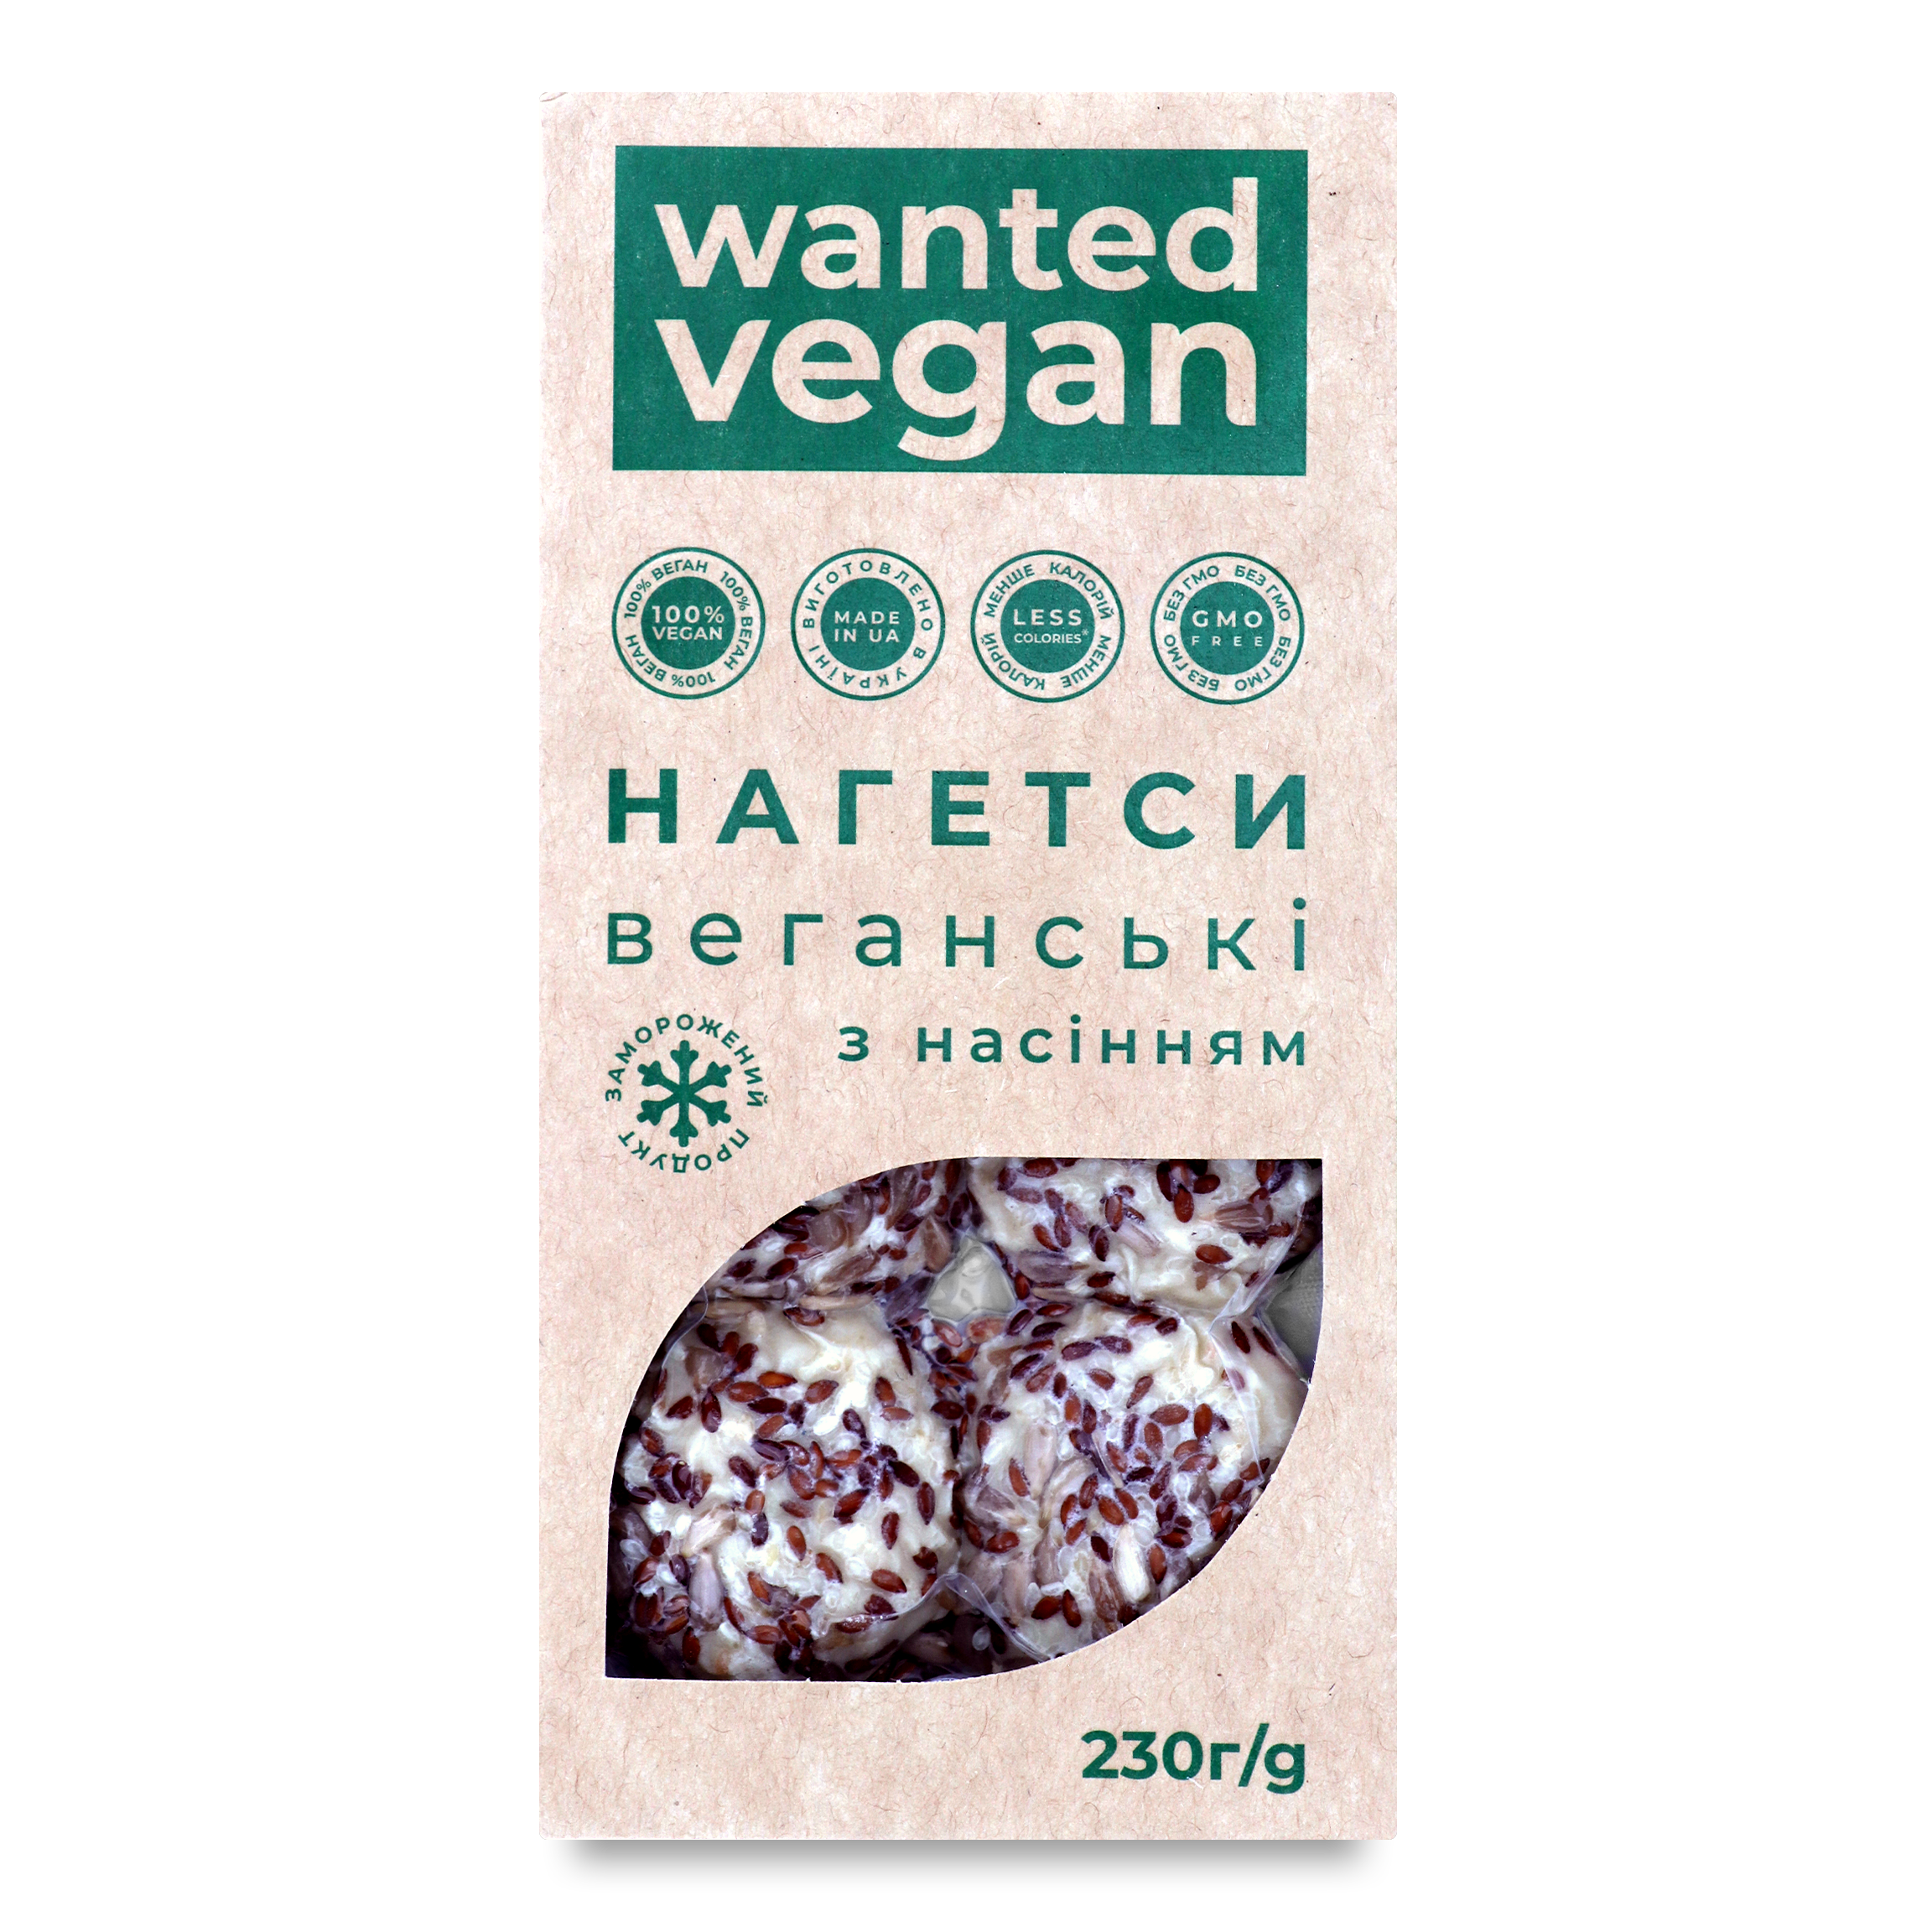 Нагетсы Wanted Vegan веганские с семенами 230г